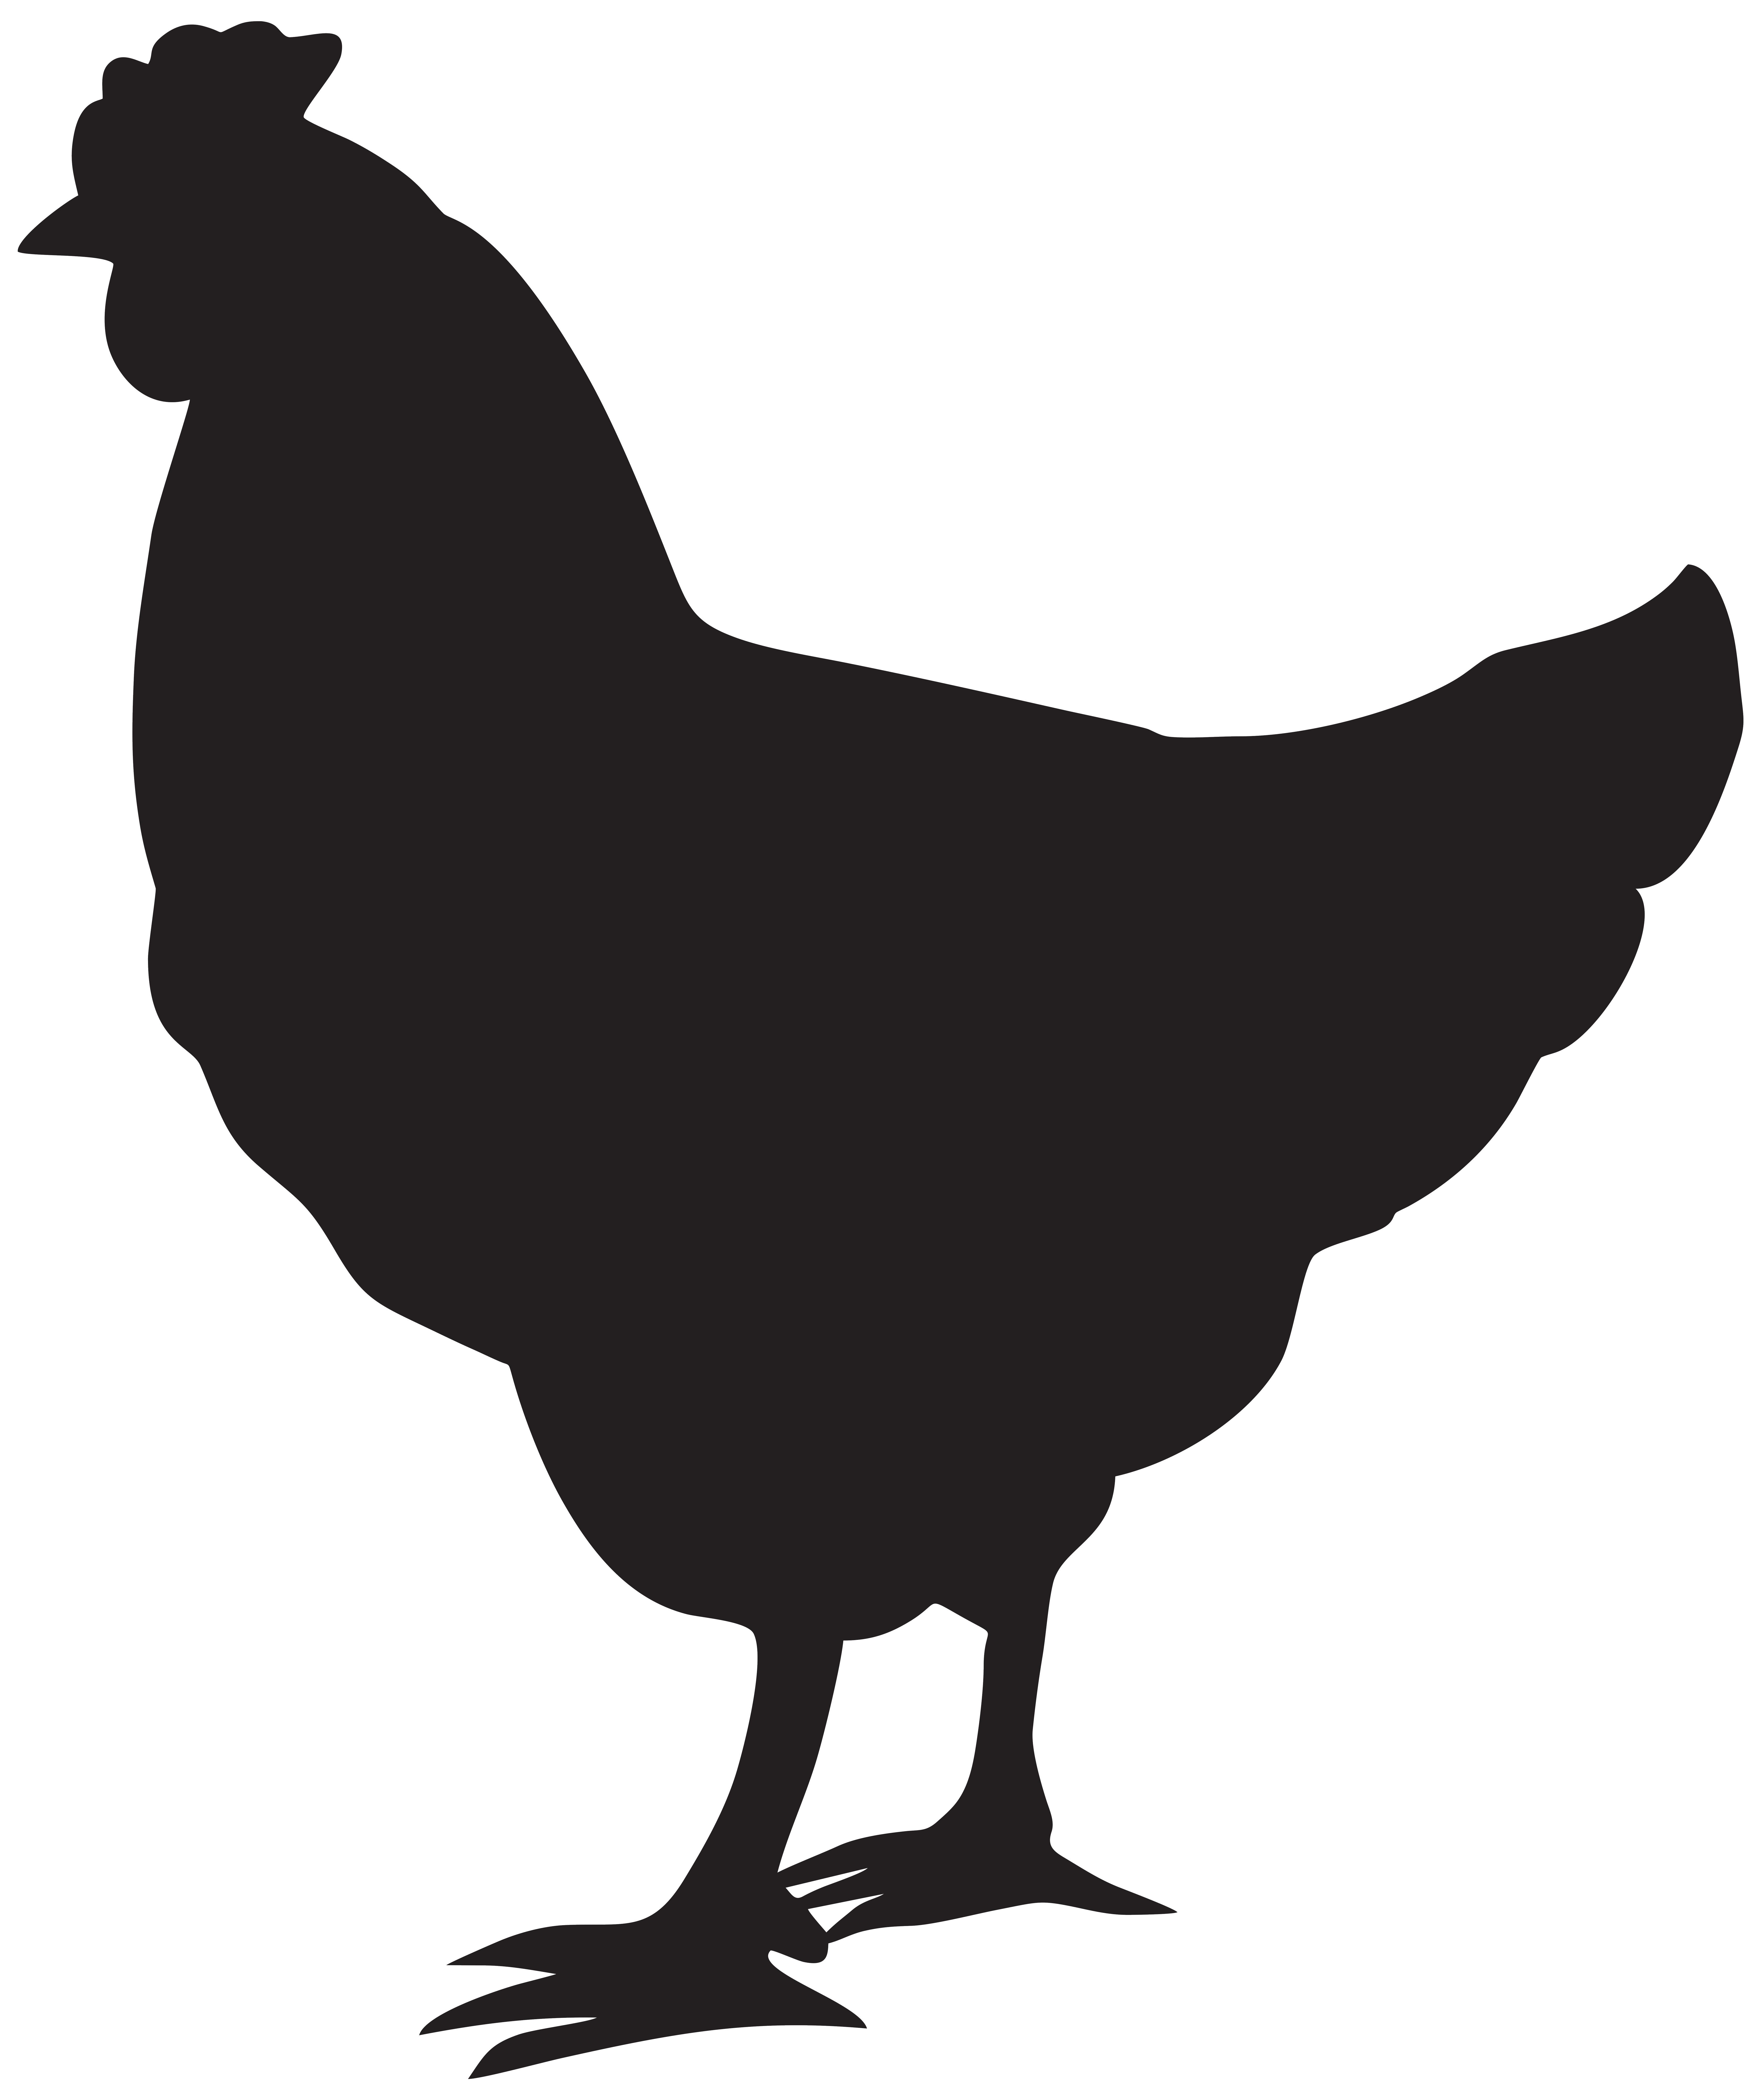 Chicken black and white